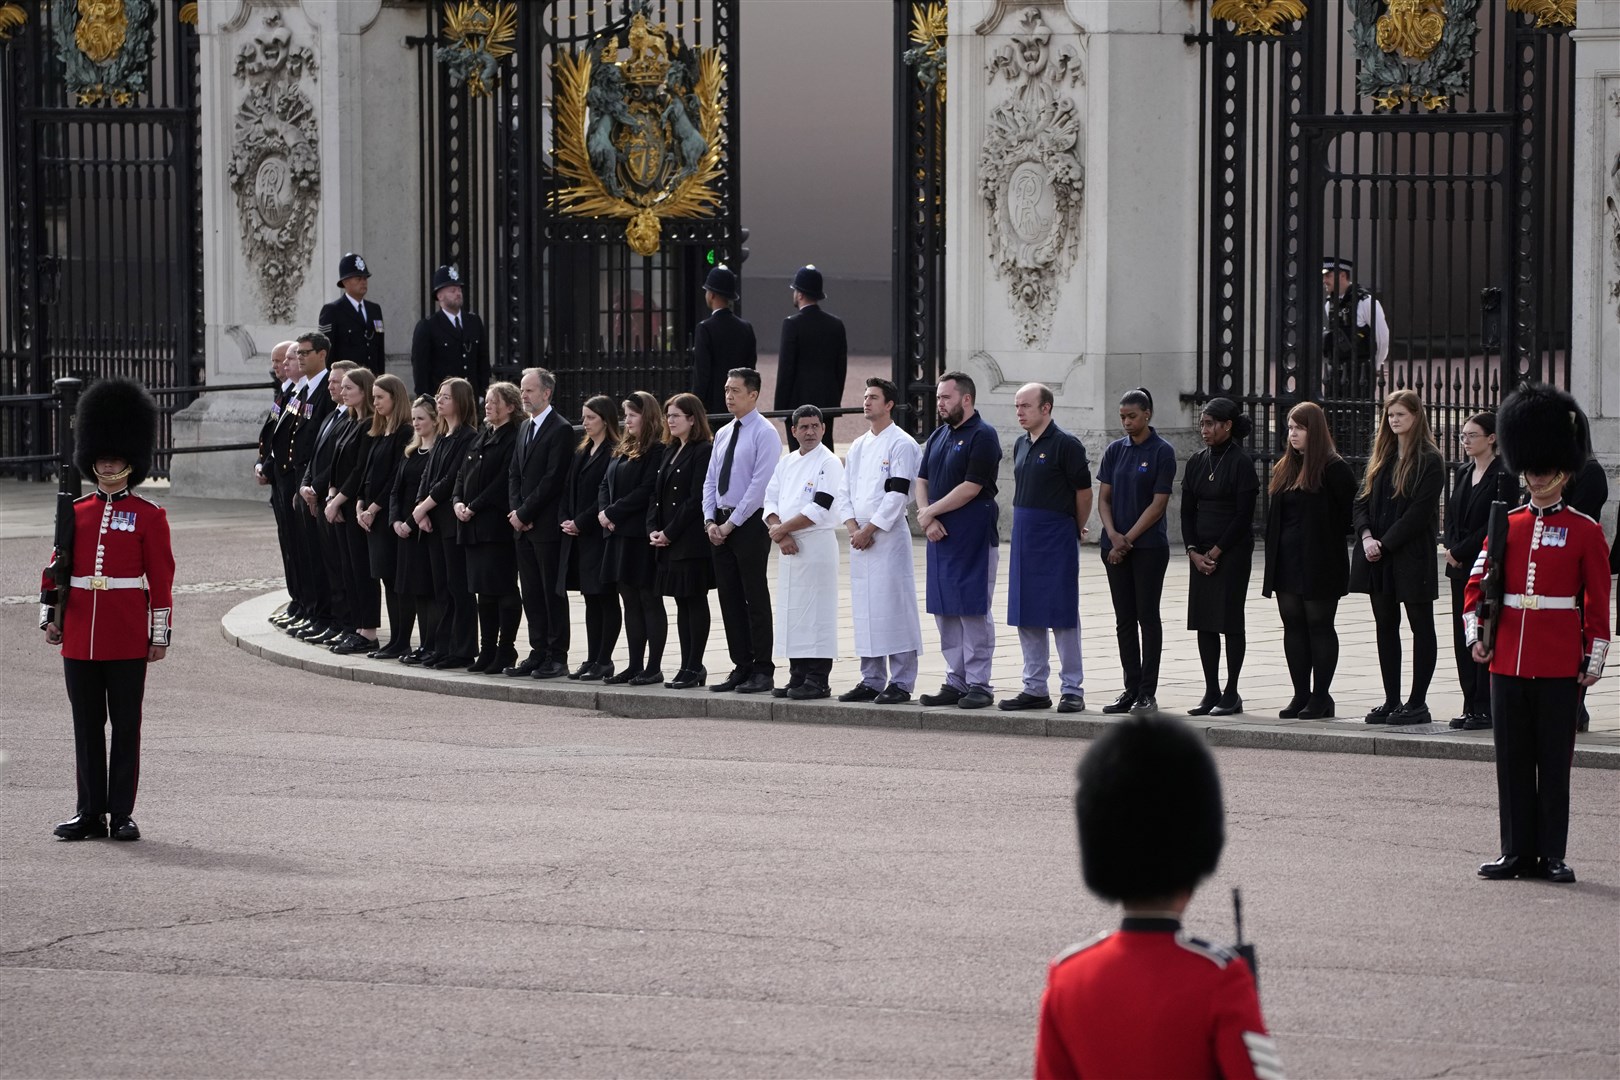 Buckingham Palace staff stand outside its gates (Christophe Ena/PA)